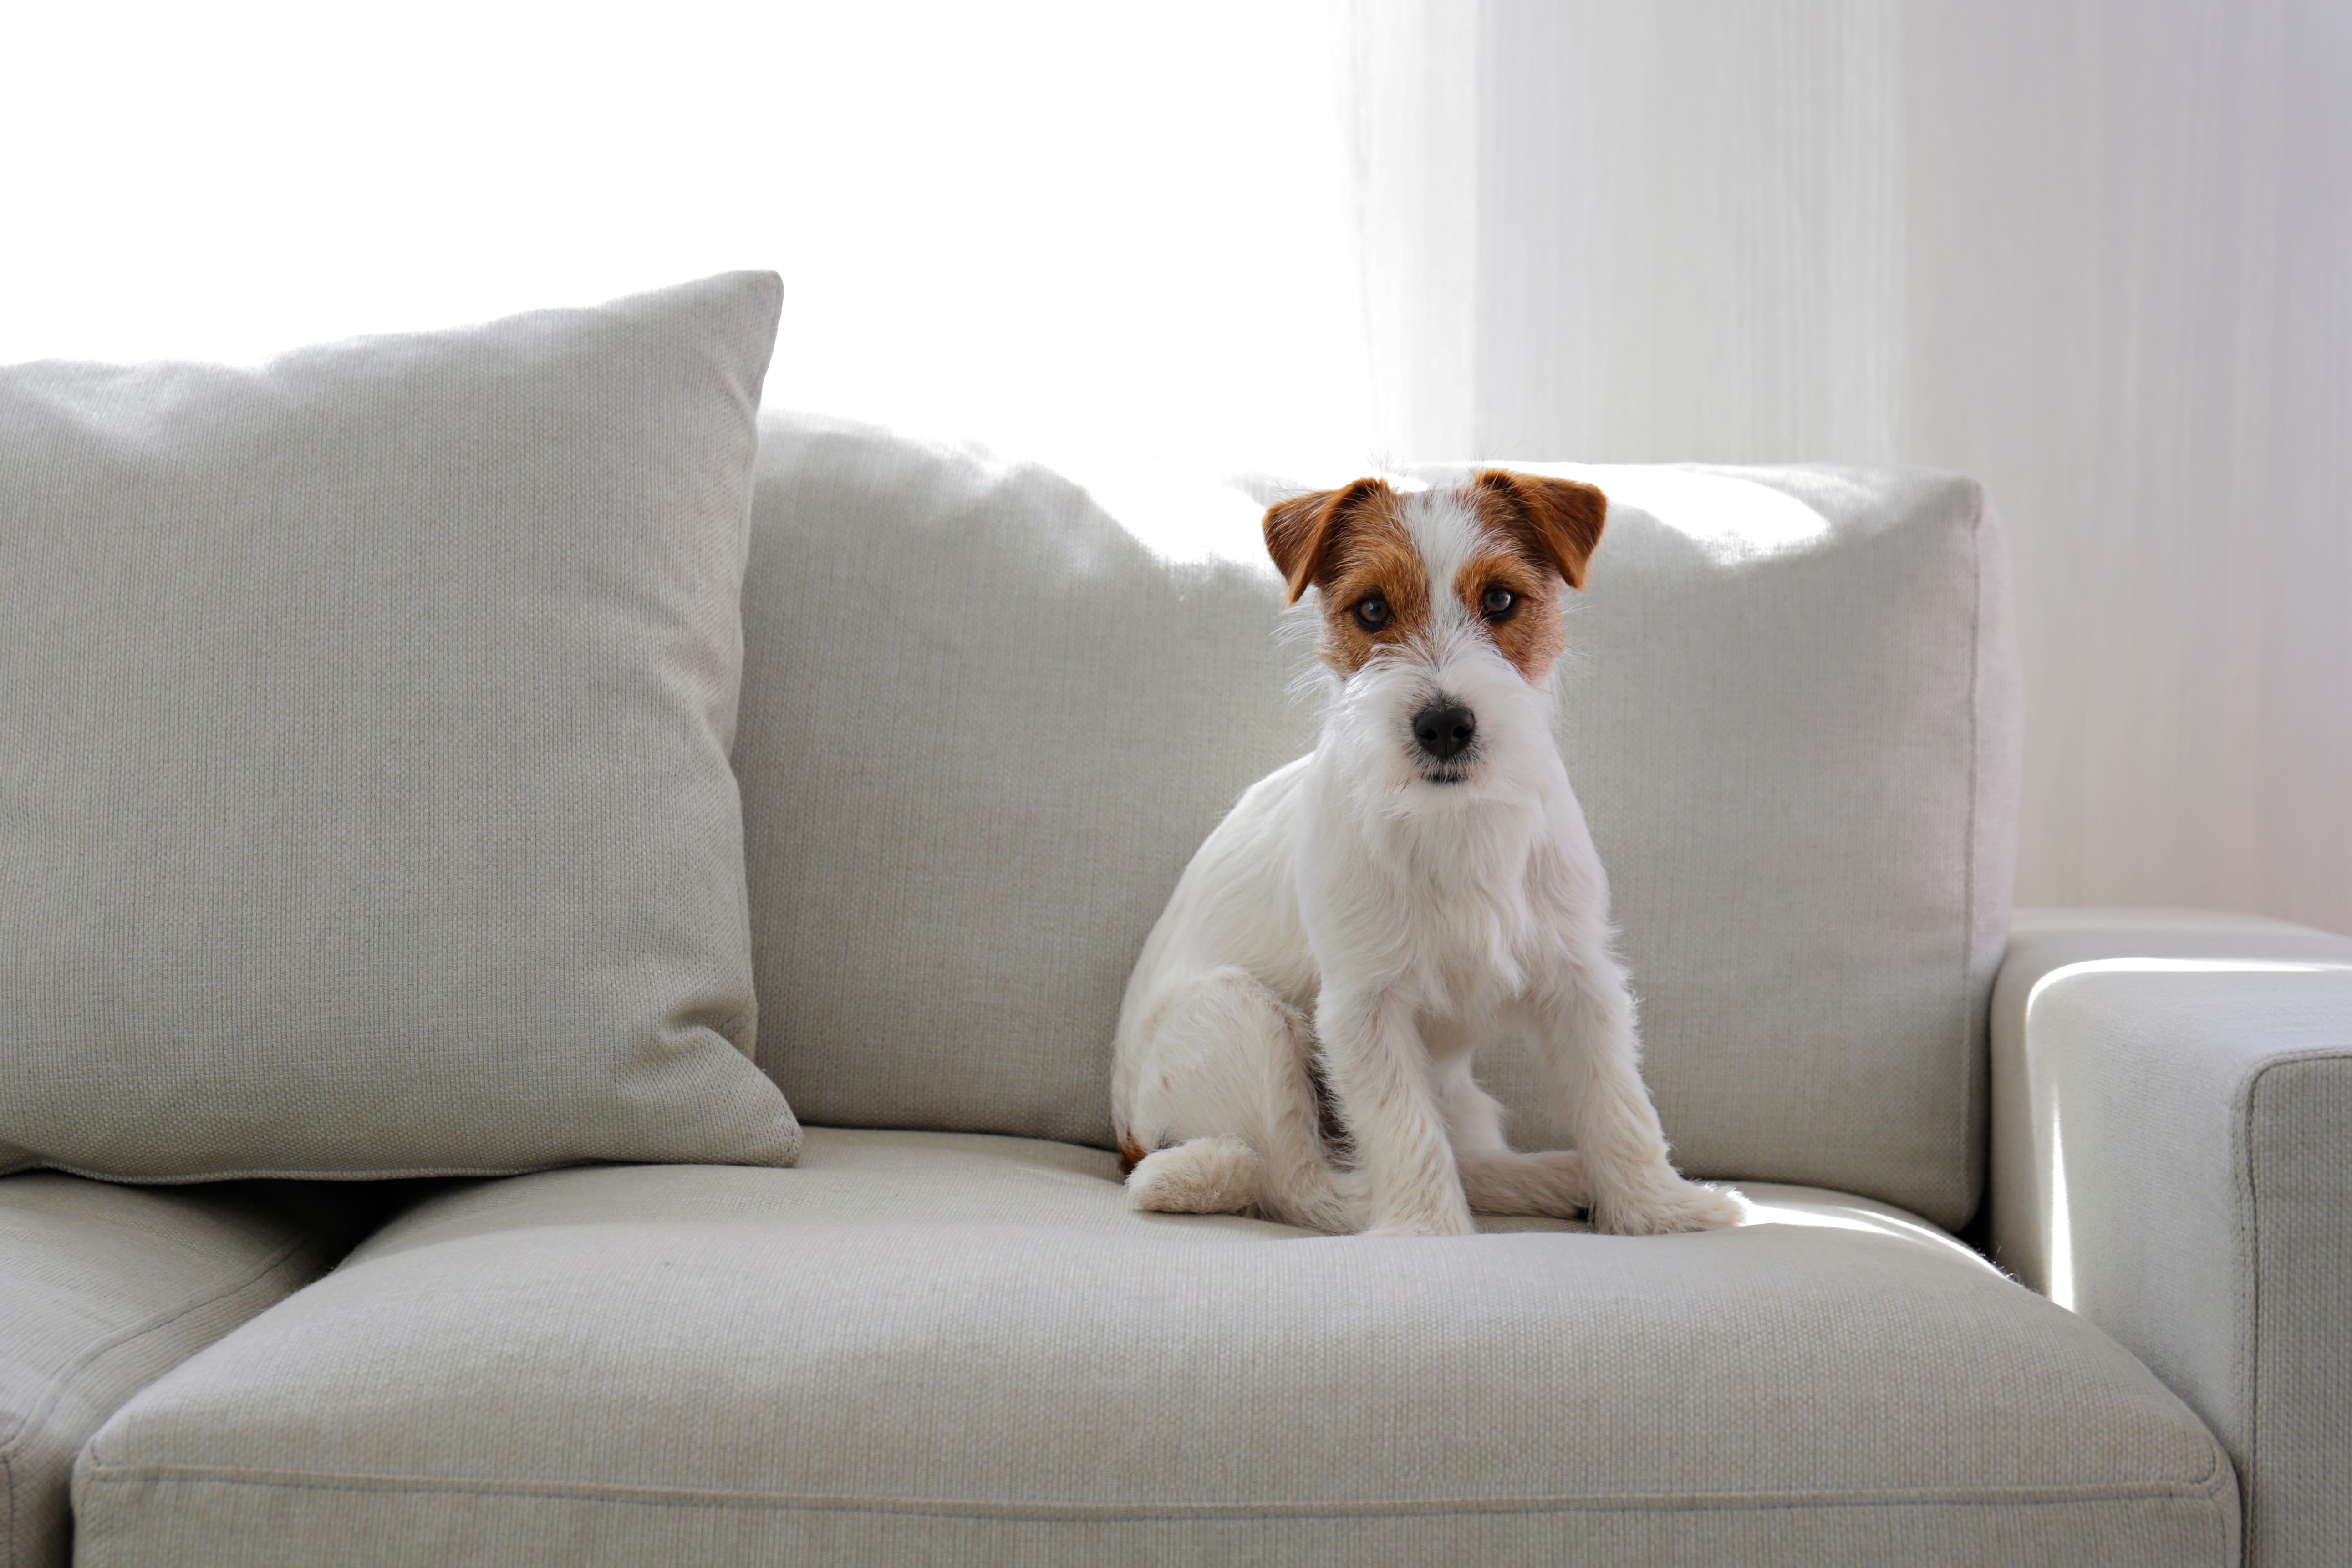 Imagem de um cachorro da raça Jack Russell branco com manchas marrons na cabeça, sentado sobre um sofá cinza, com cortinas ao fundo.